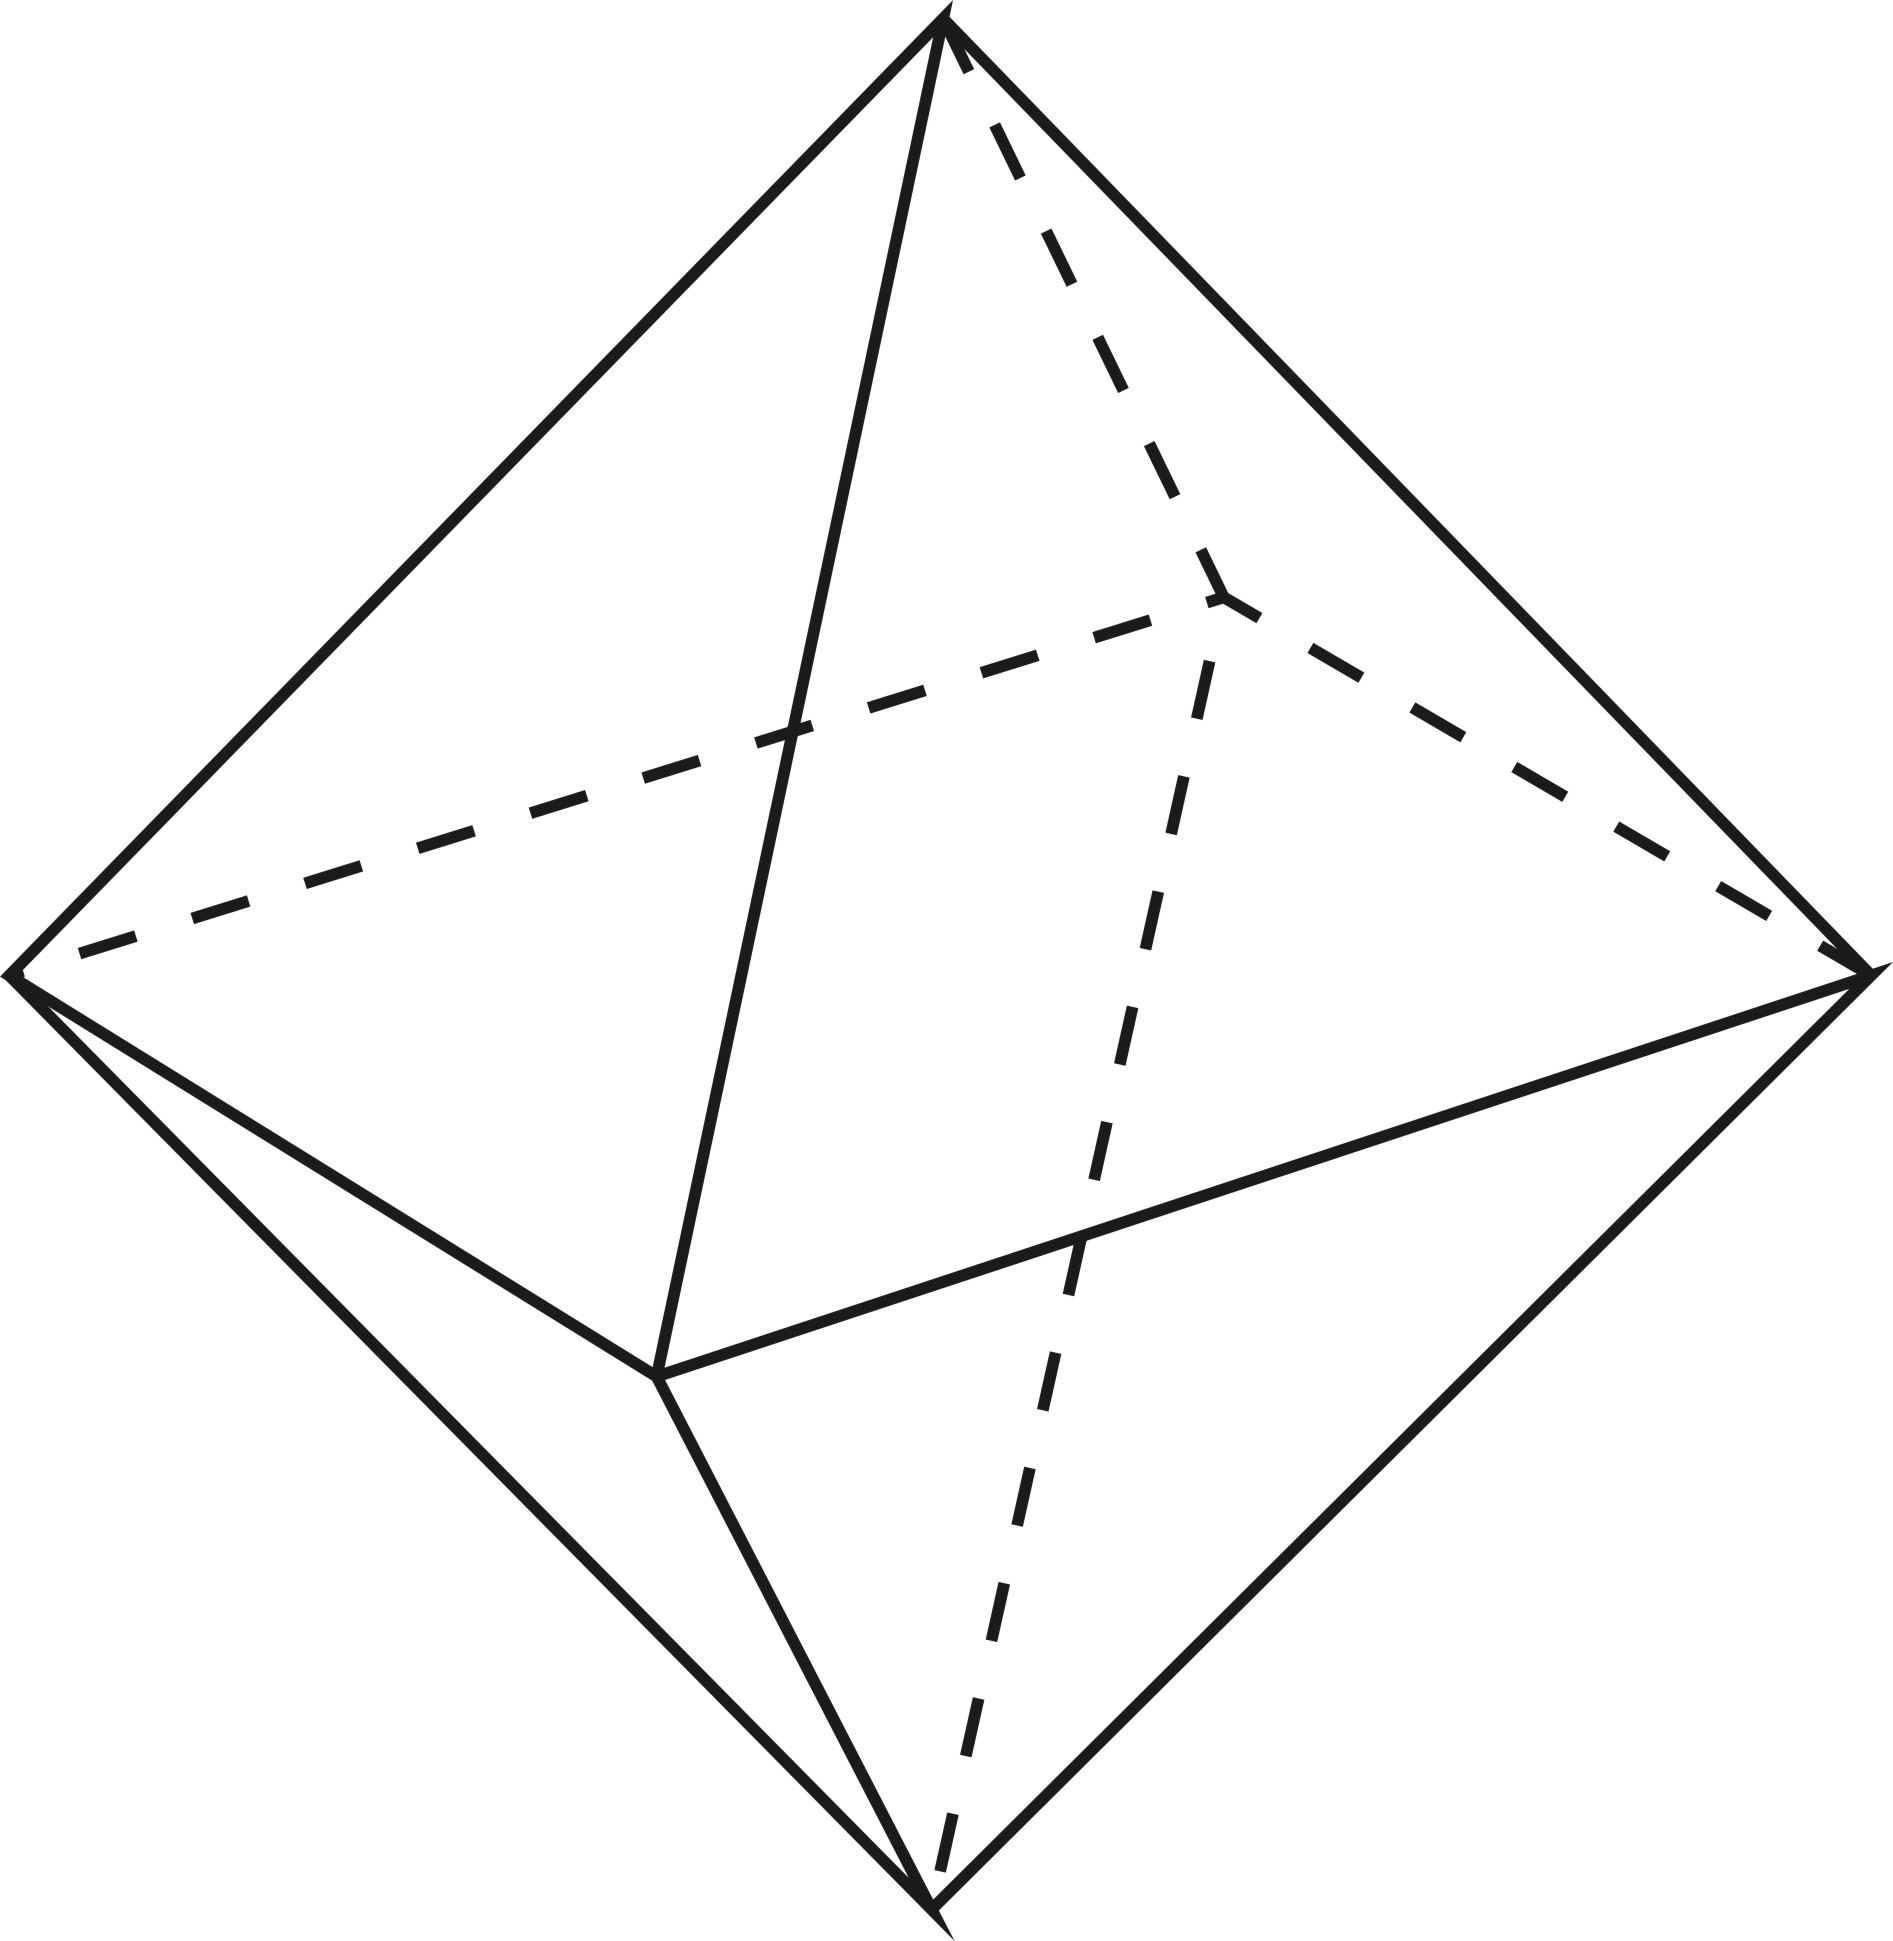 Правильные многогранники октаэдр